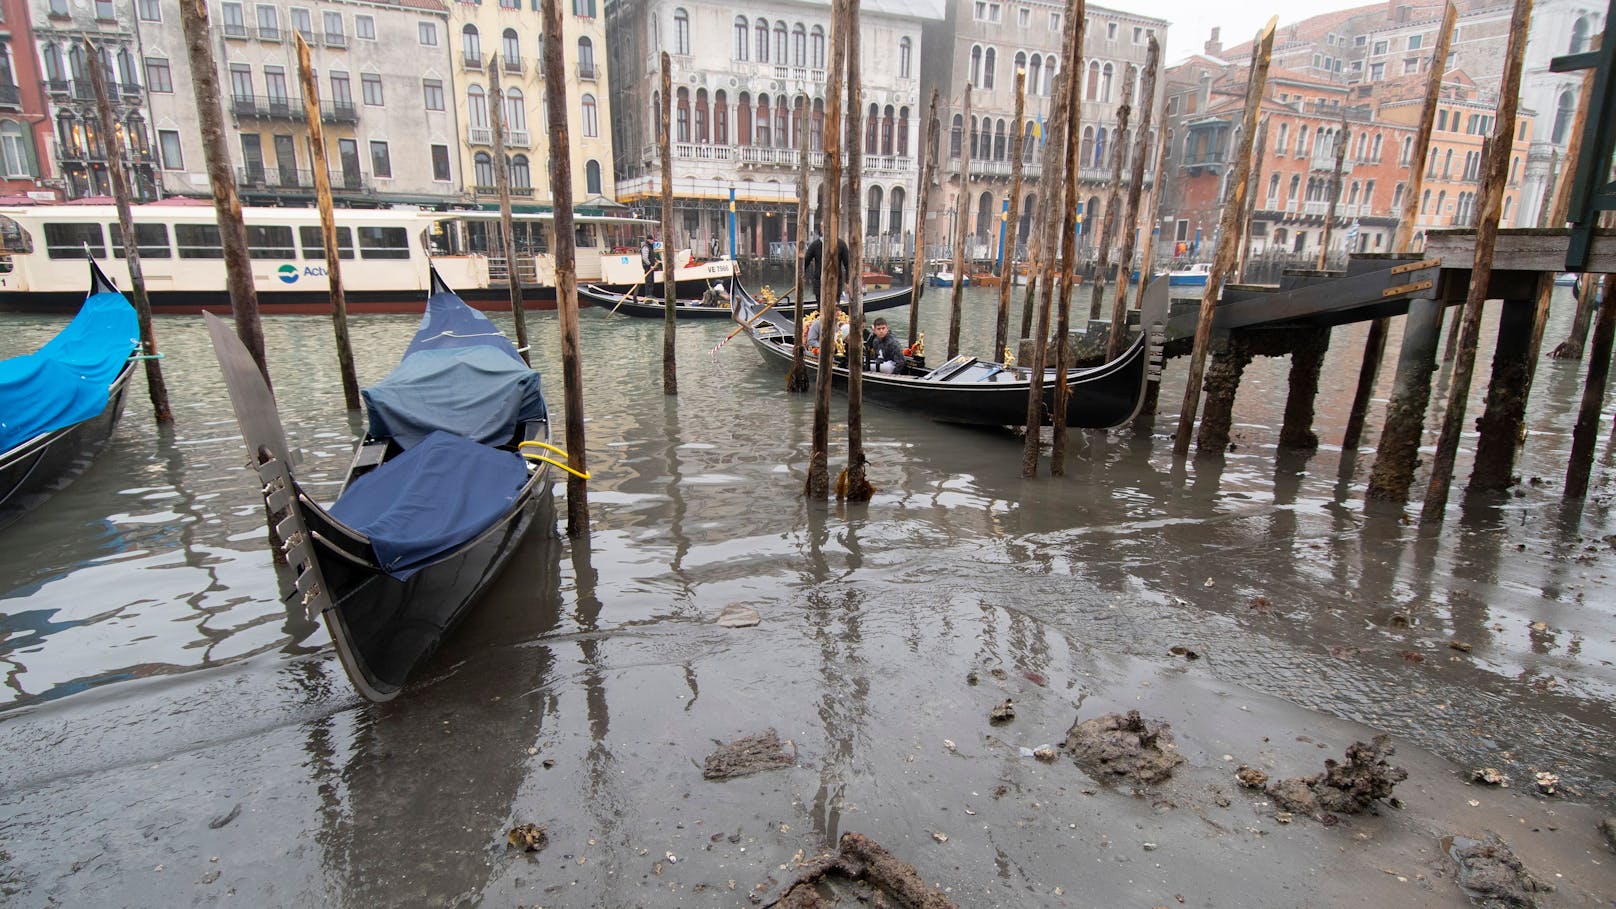 Bilder aus Venedig zeigen, dass ganze Kanäle ausgetrocknet sind.